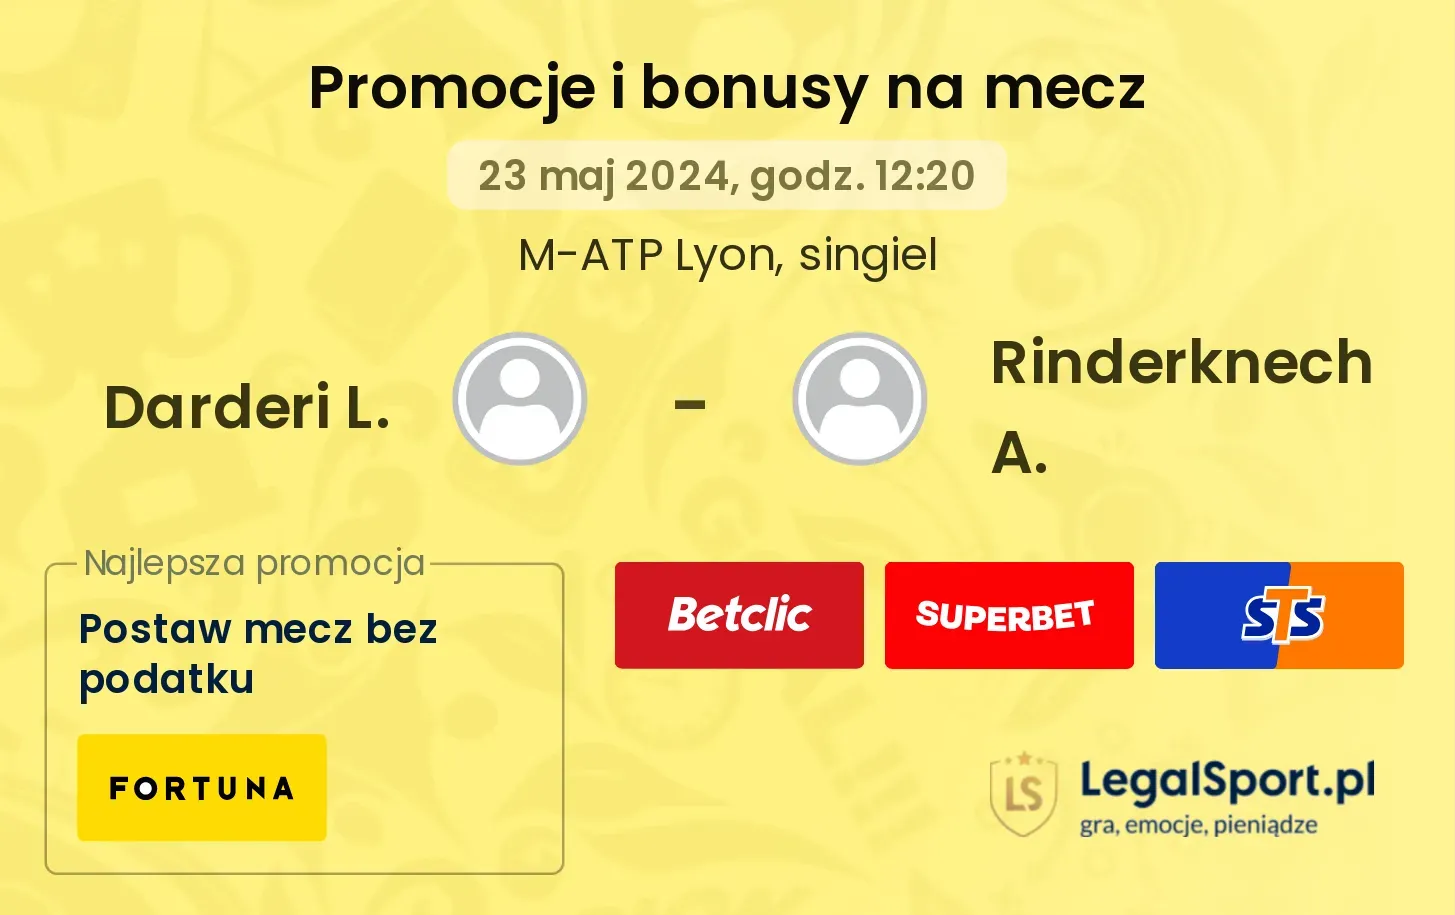 Darderi L. - Rinderknech A. promocje bonusy na mecz